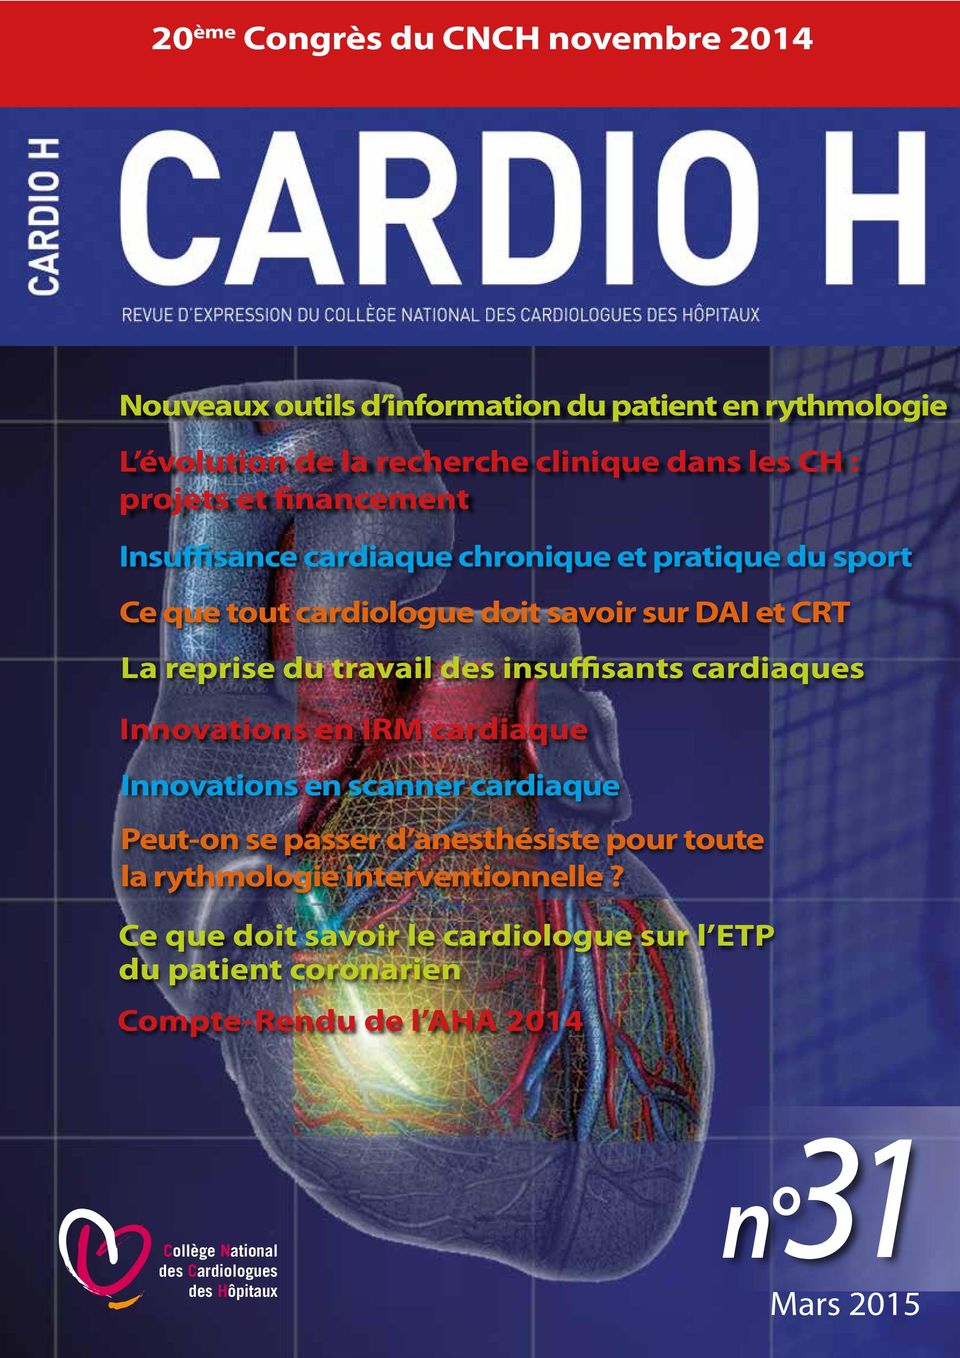 insuffisants cardiaques Innovations en IRM cardiaque Innovations en scanner cardiaque Peut-on se passer d anesthésiste pour toute la rythmologie